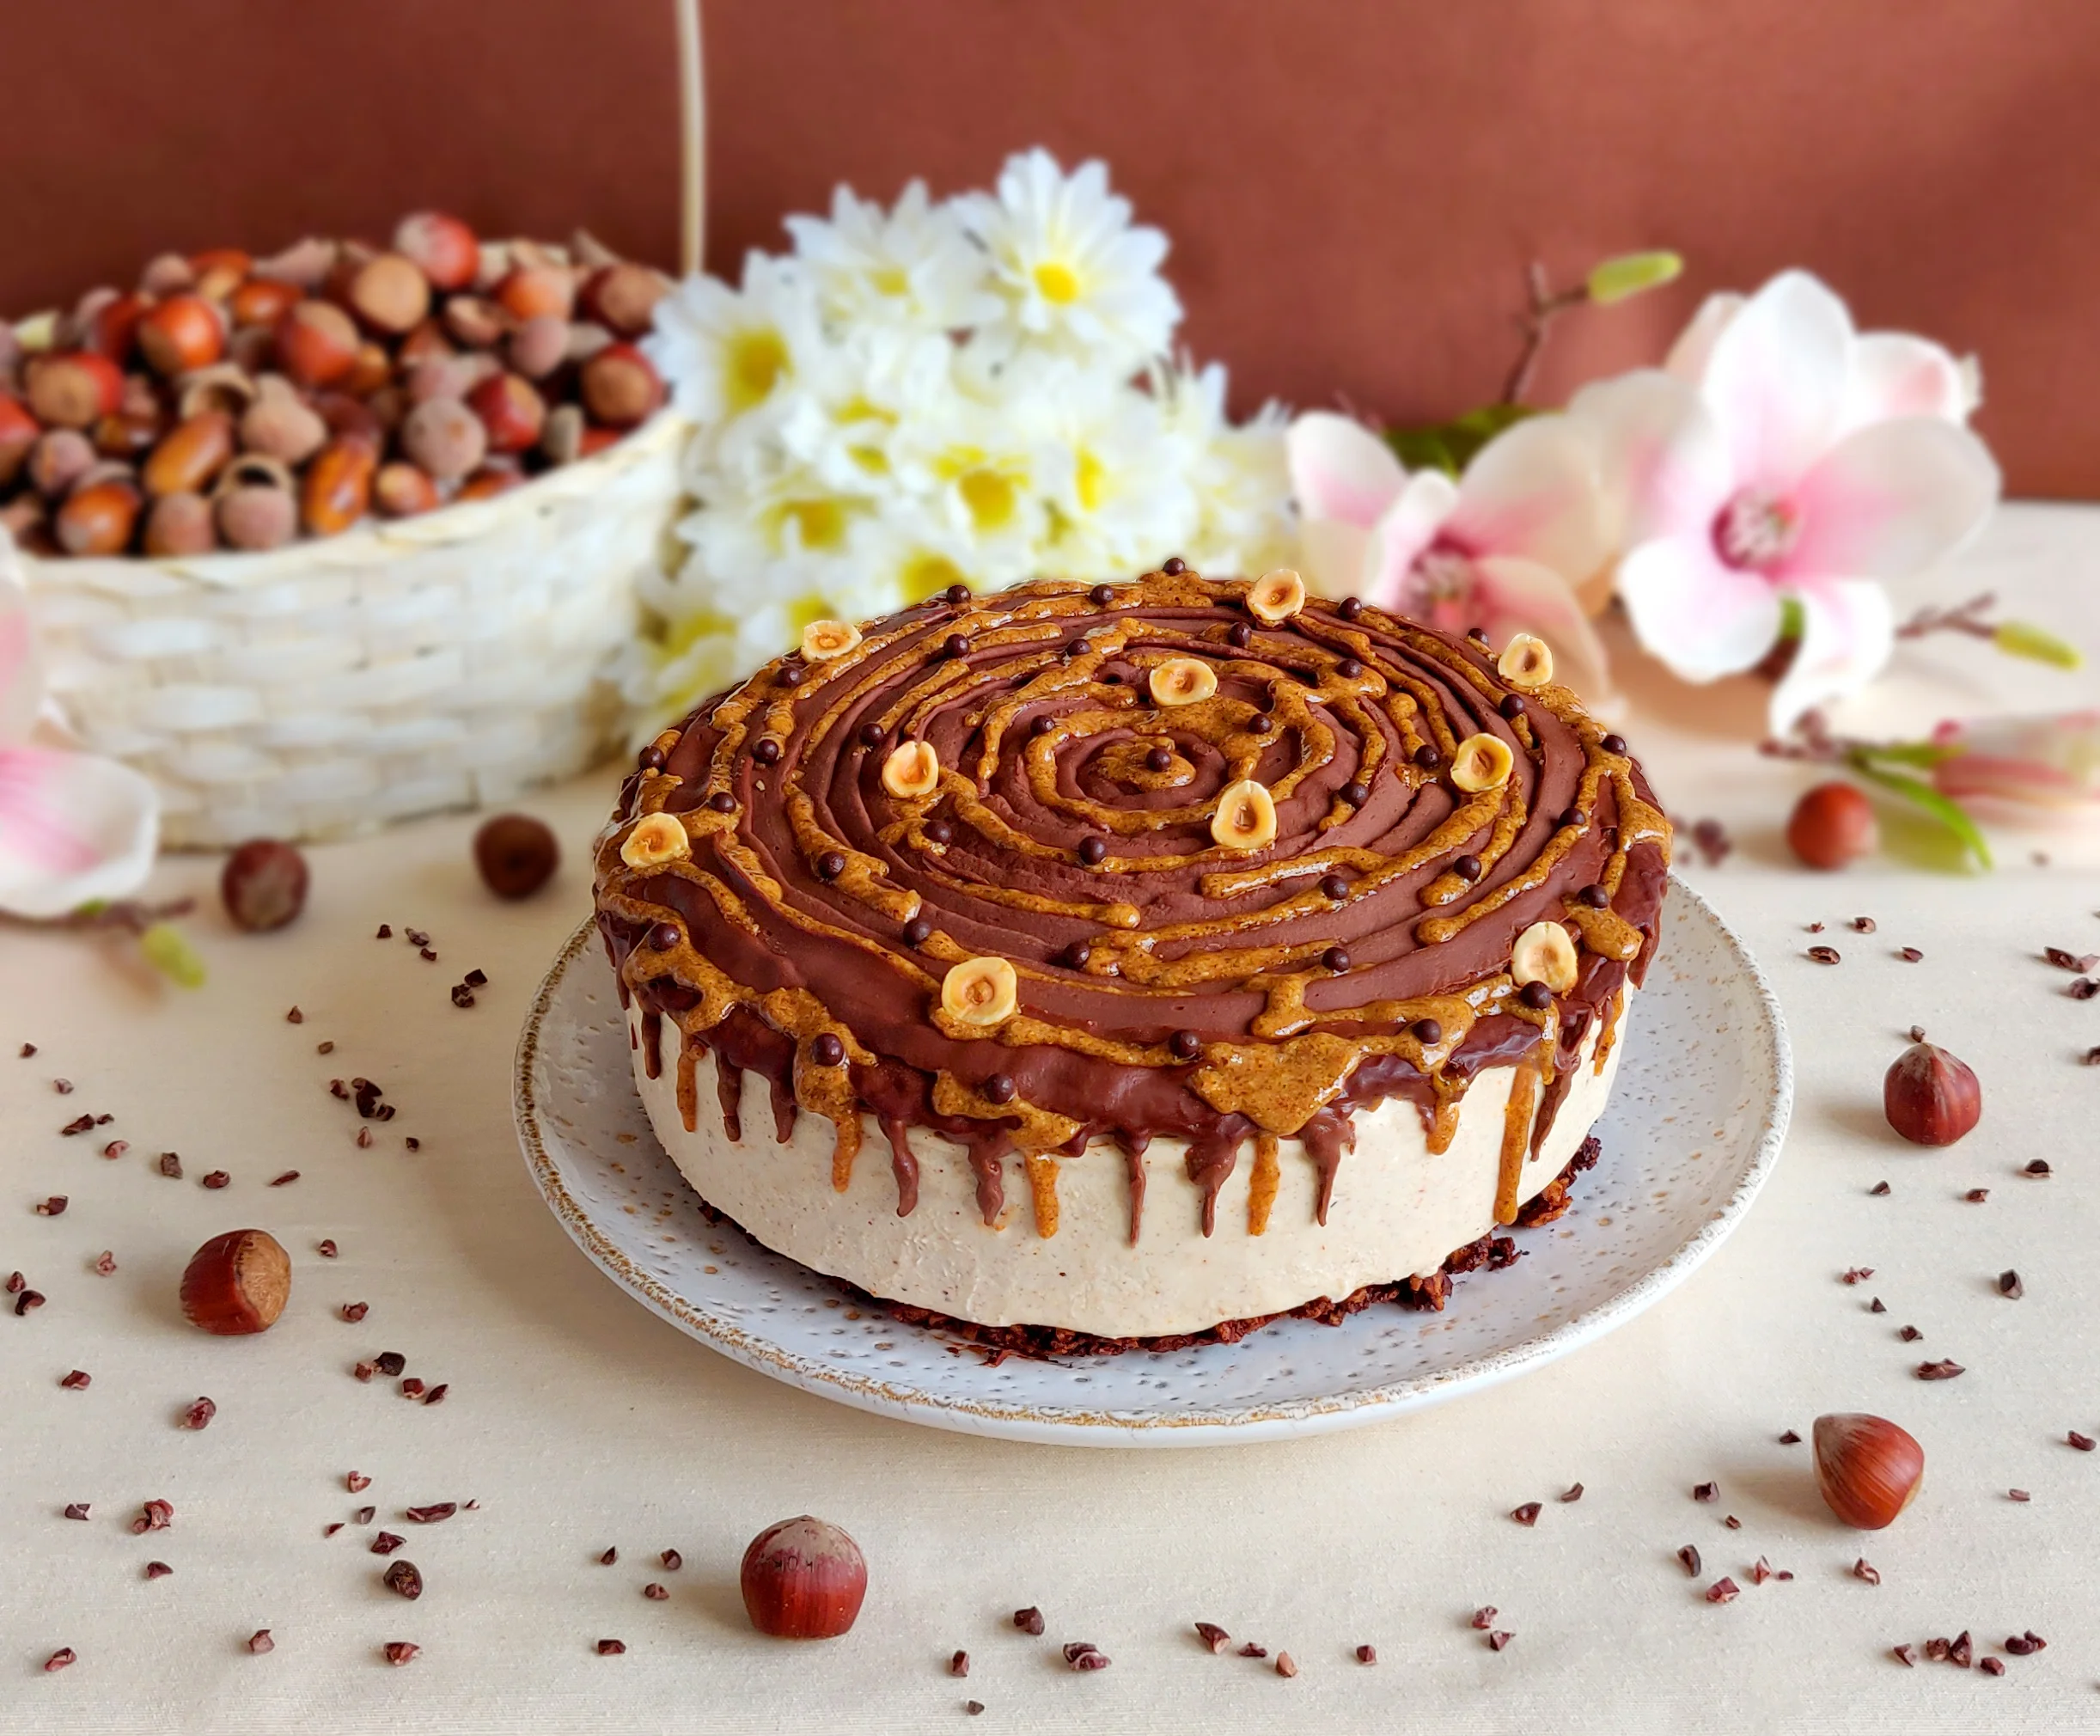 /assets/images/recipes/hazelnut-chocolate-cheesecake/1.webp